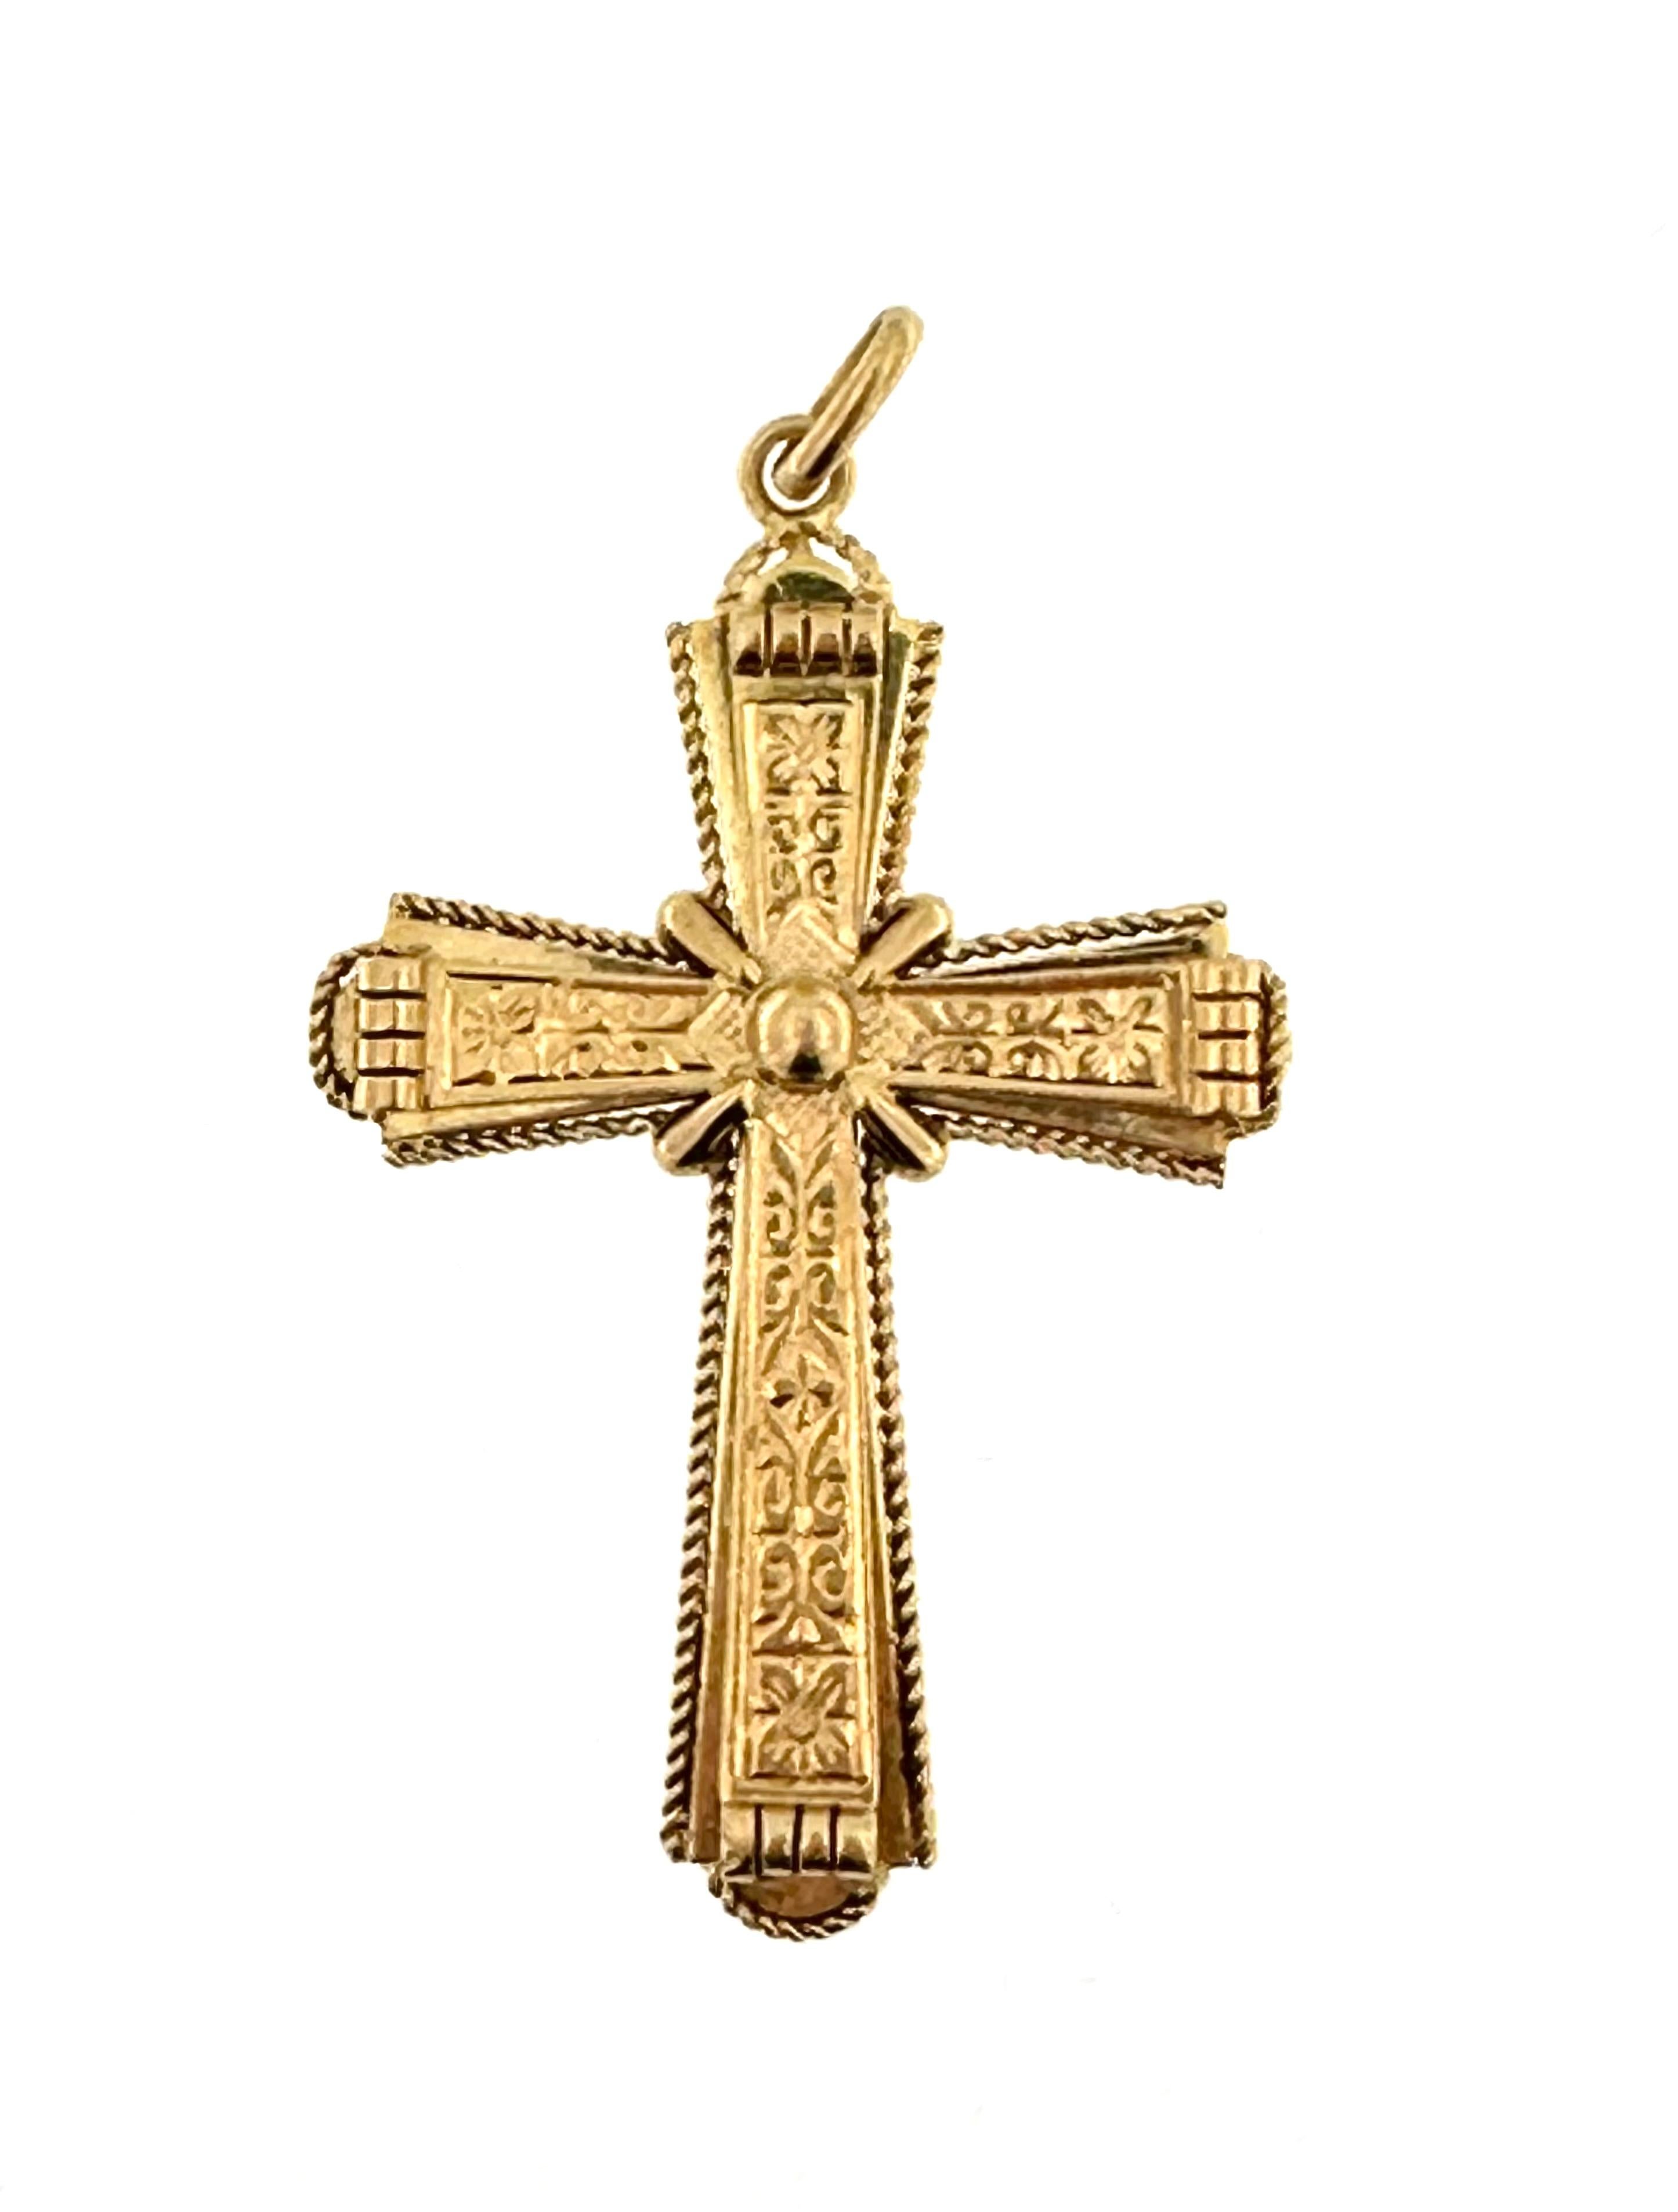 Cette croix italienne antique impressionne par la précision et le détail de la décoration. Magnifique et élégante, cette croix italienne vintage est fabriquée à la main avec des motifs floraux. La croix en or jaune 18kt est en bon état d'usage, avec